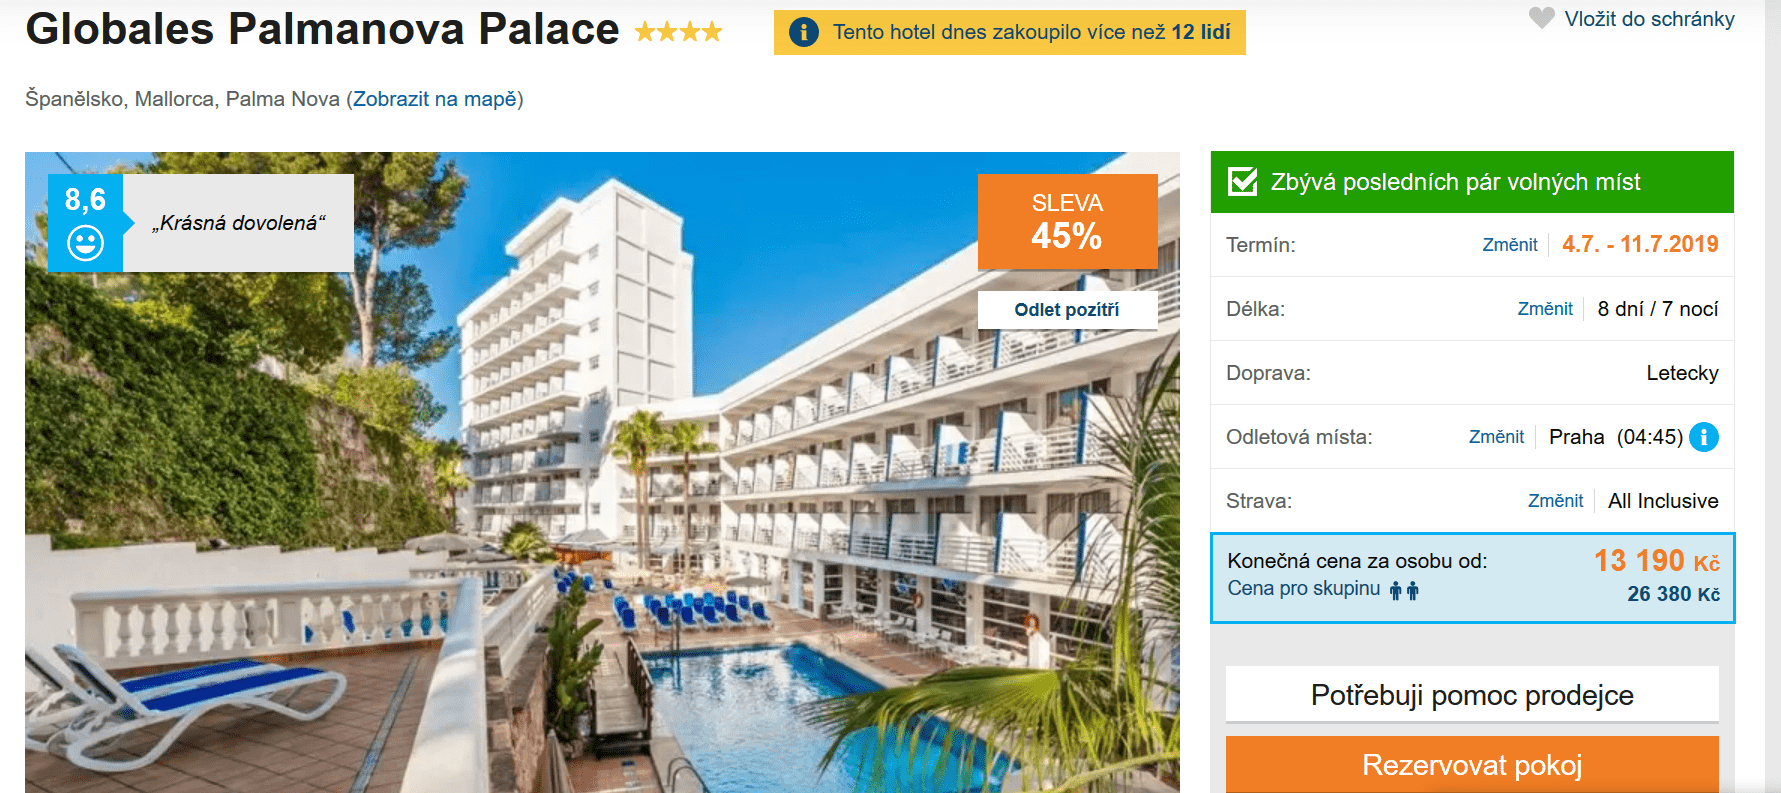 Zájezd Mallorca (hotel Globales Palmanova Palace)